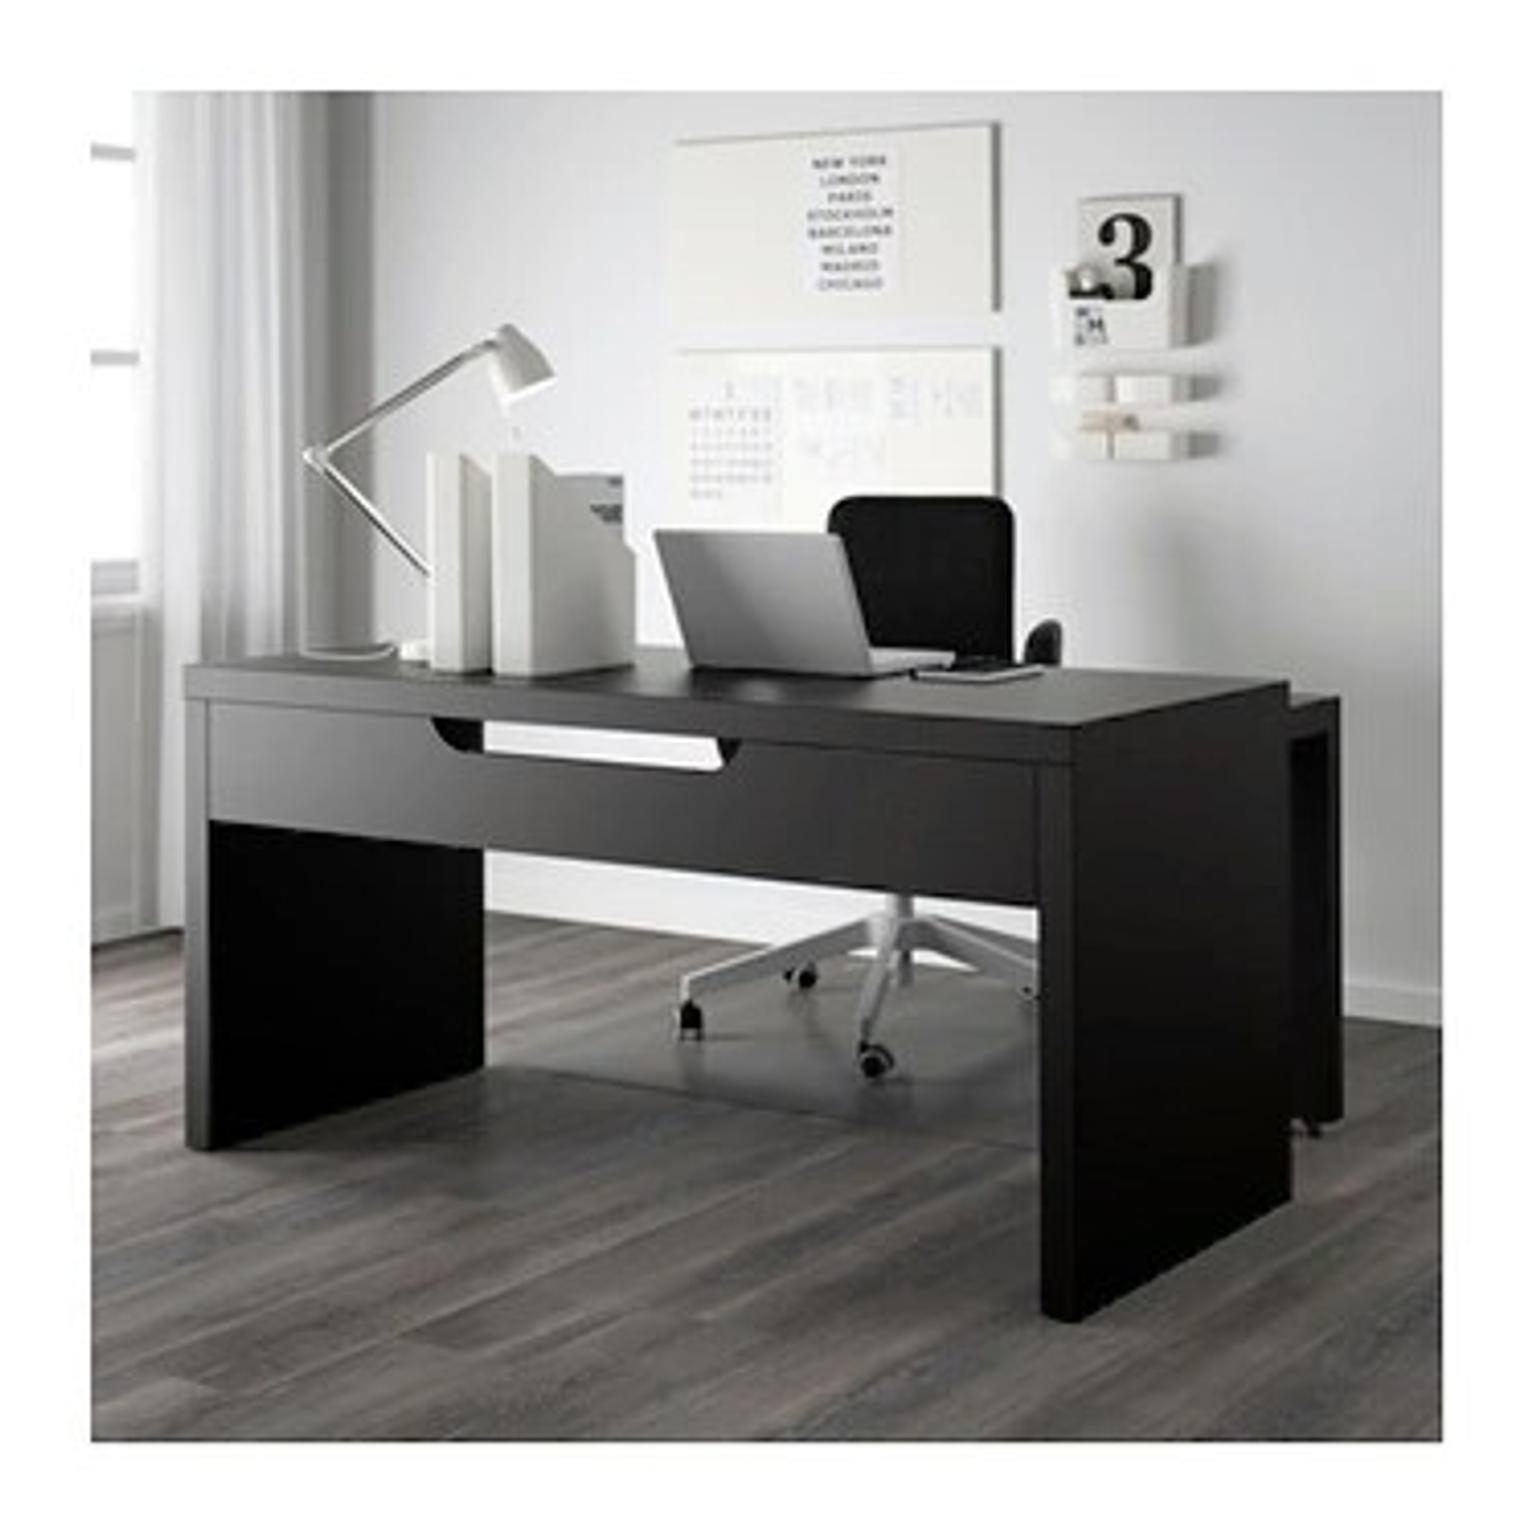 Ikea Malm Desk And Monitor Stand In Br6 Orpington Fur 50 00 Zum